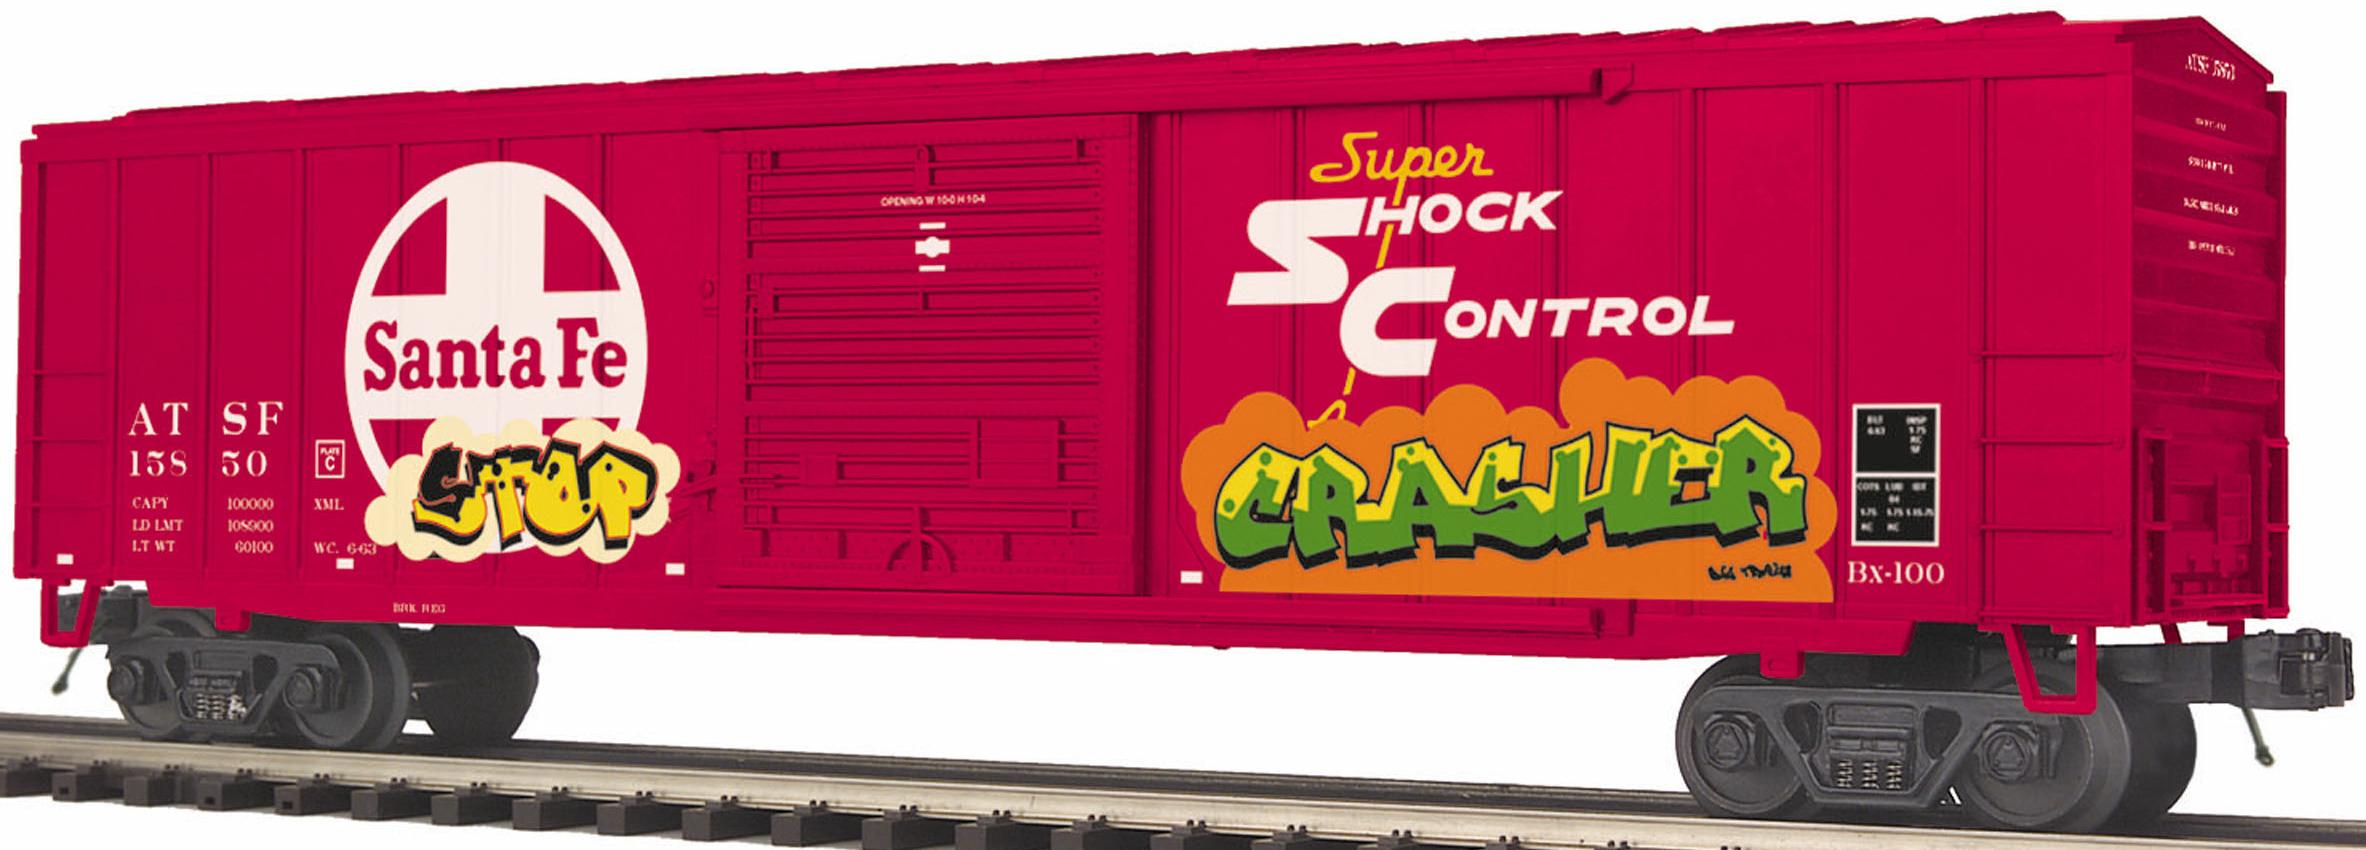 Santa Fe 50' Box Car w/graffiti image